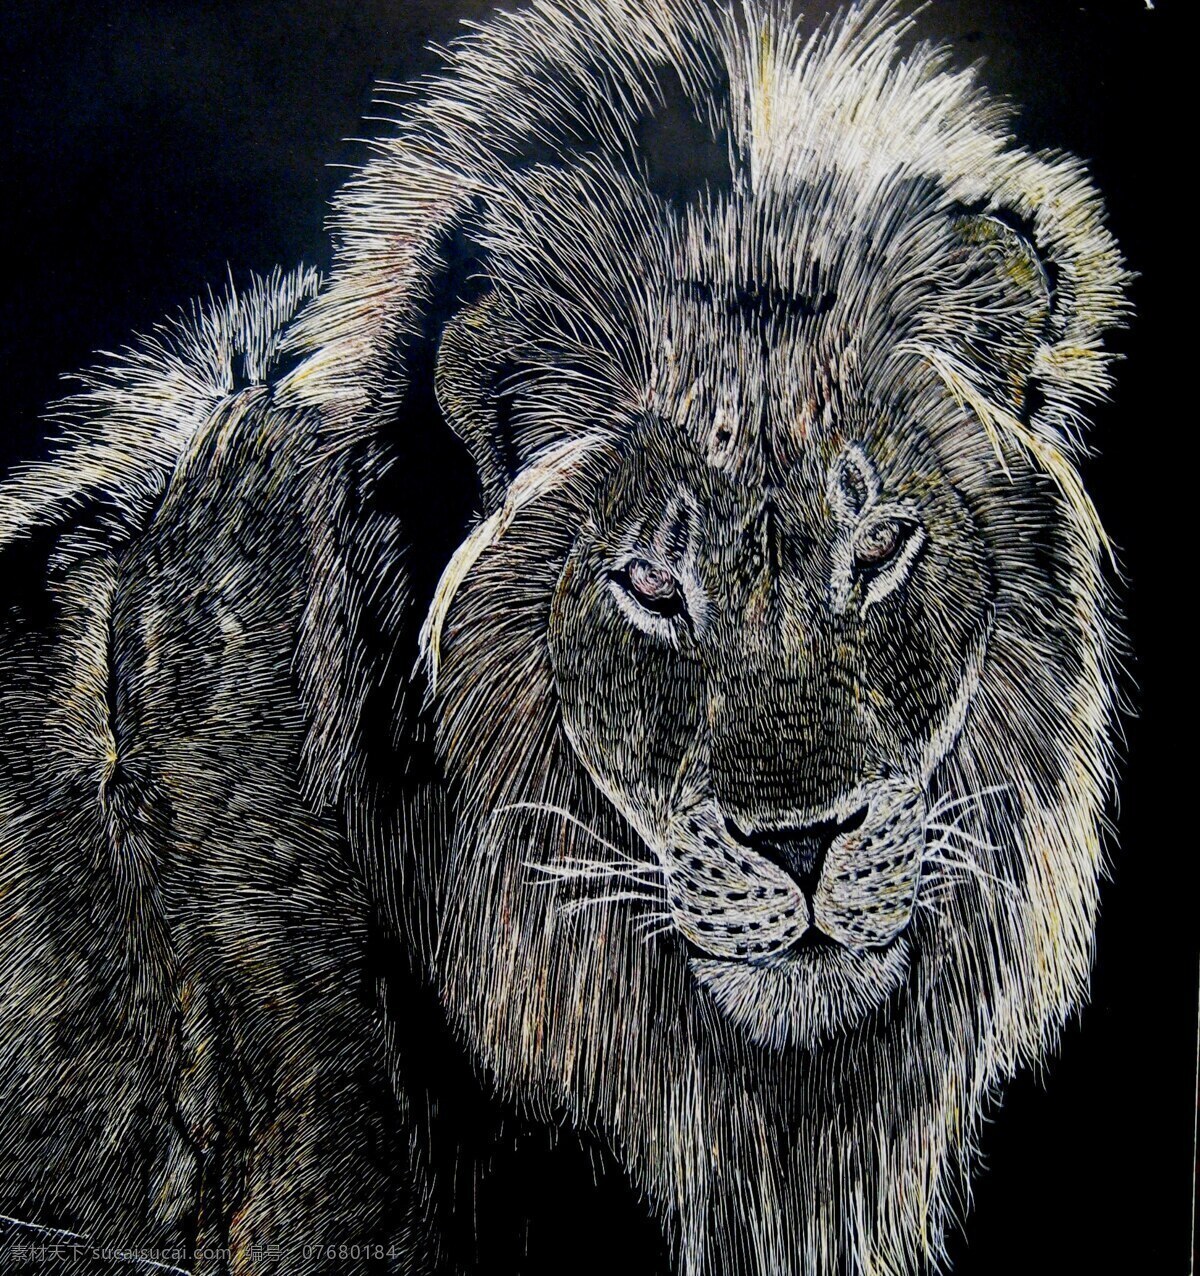 木刻狮子 摄影图片 摄影素材 艺术图片 木刻动物 木刻 设计素材 文化艺术